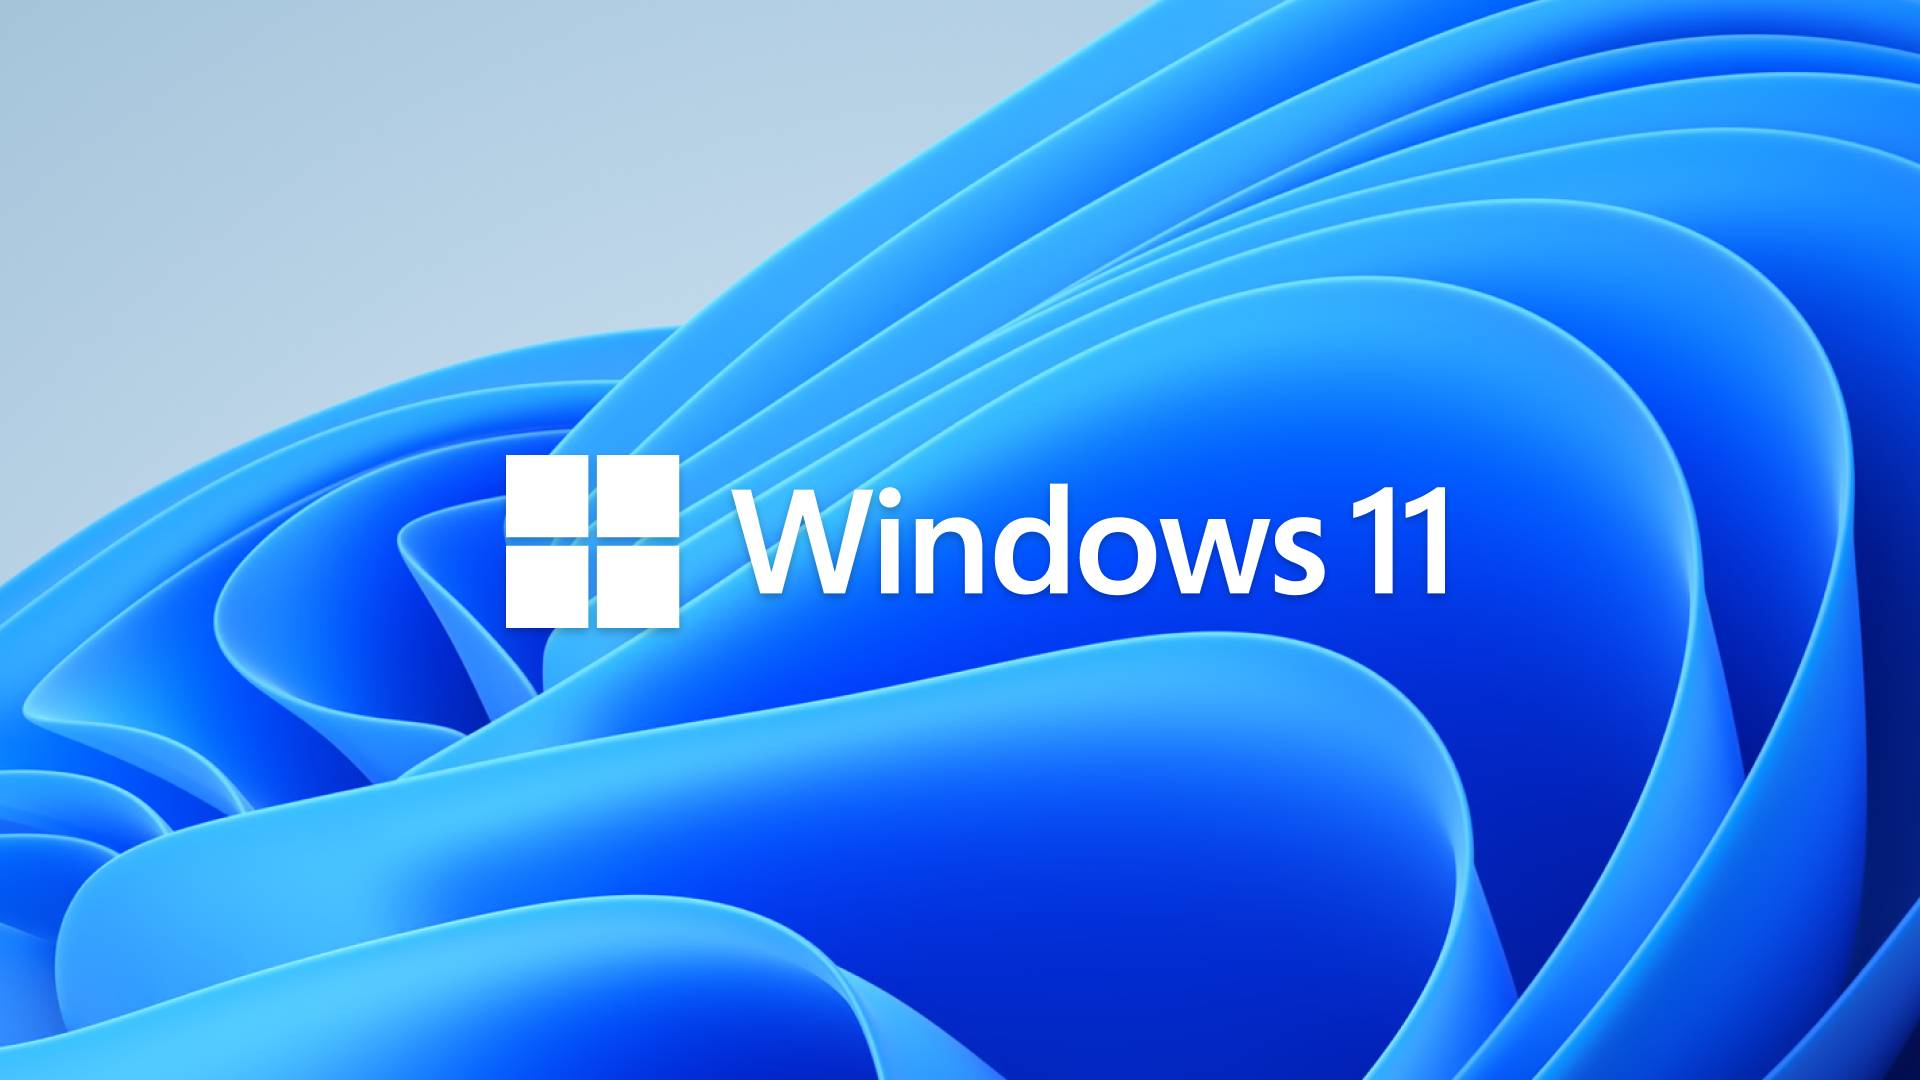 Microsoft übte scharfe Kritik: Windows 11 reagiert auf behördliche Maßnahmen